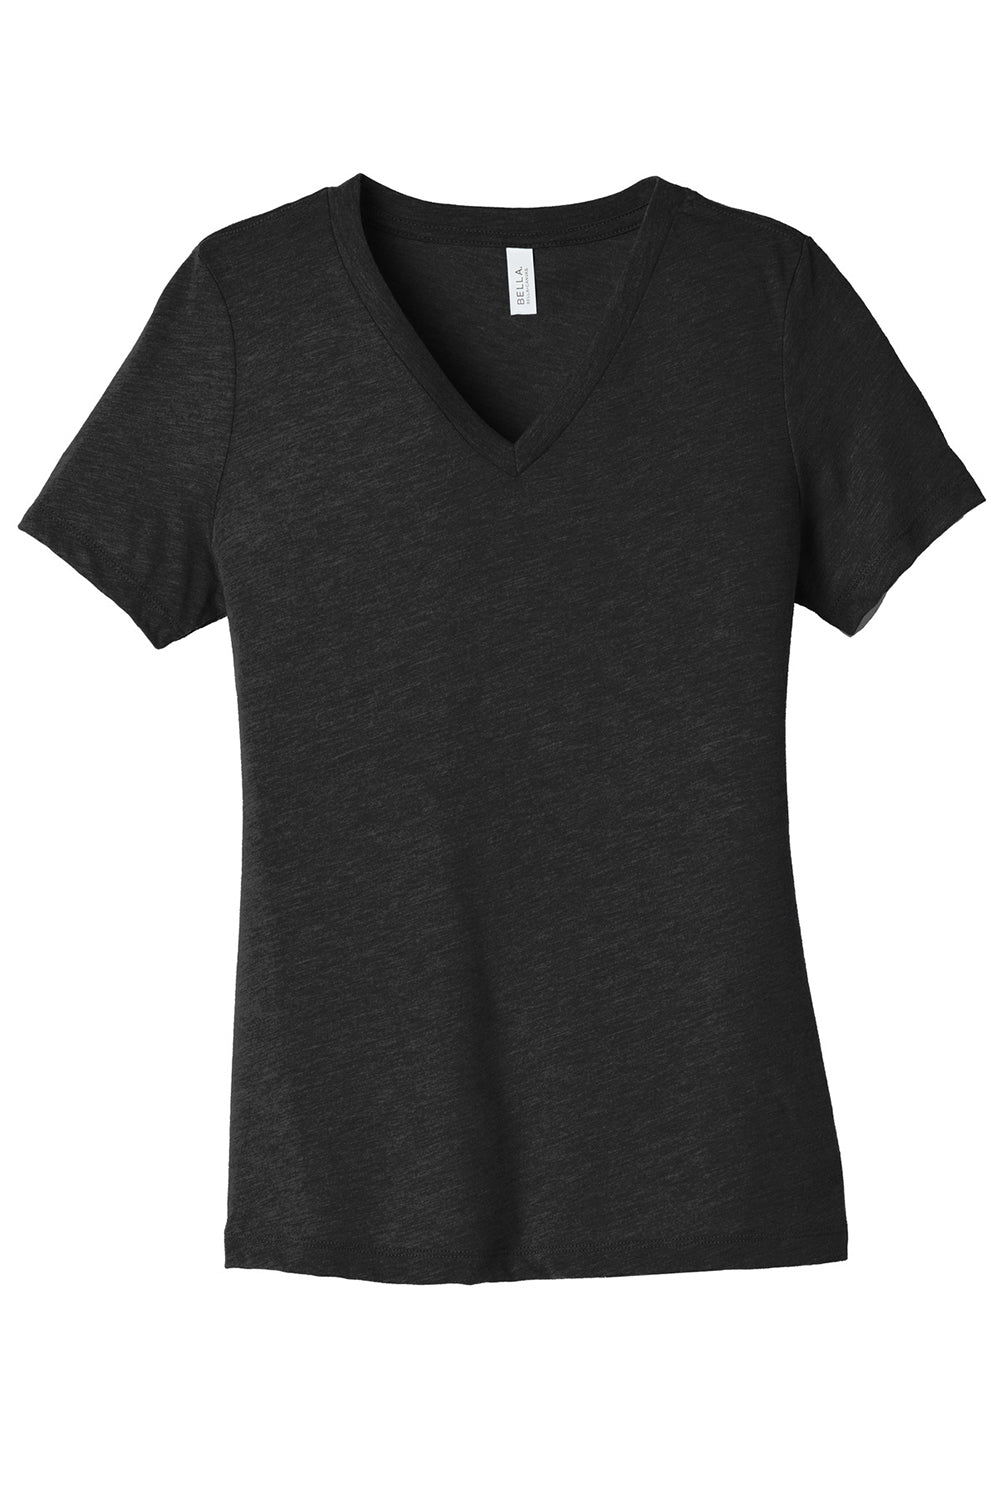 Bella + Canvas BC6405CVC Womens CVC Short Sleeve V-Neck T-Shirt Heather Black Flat Front